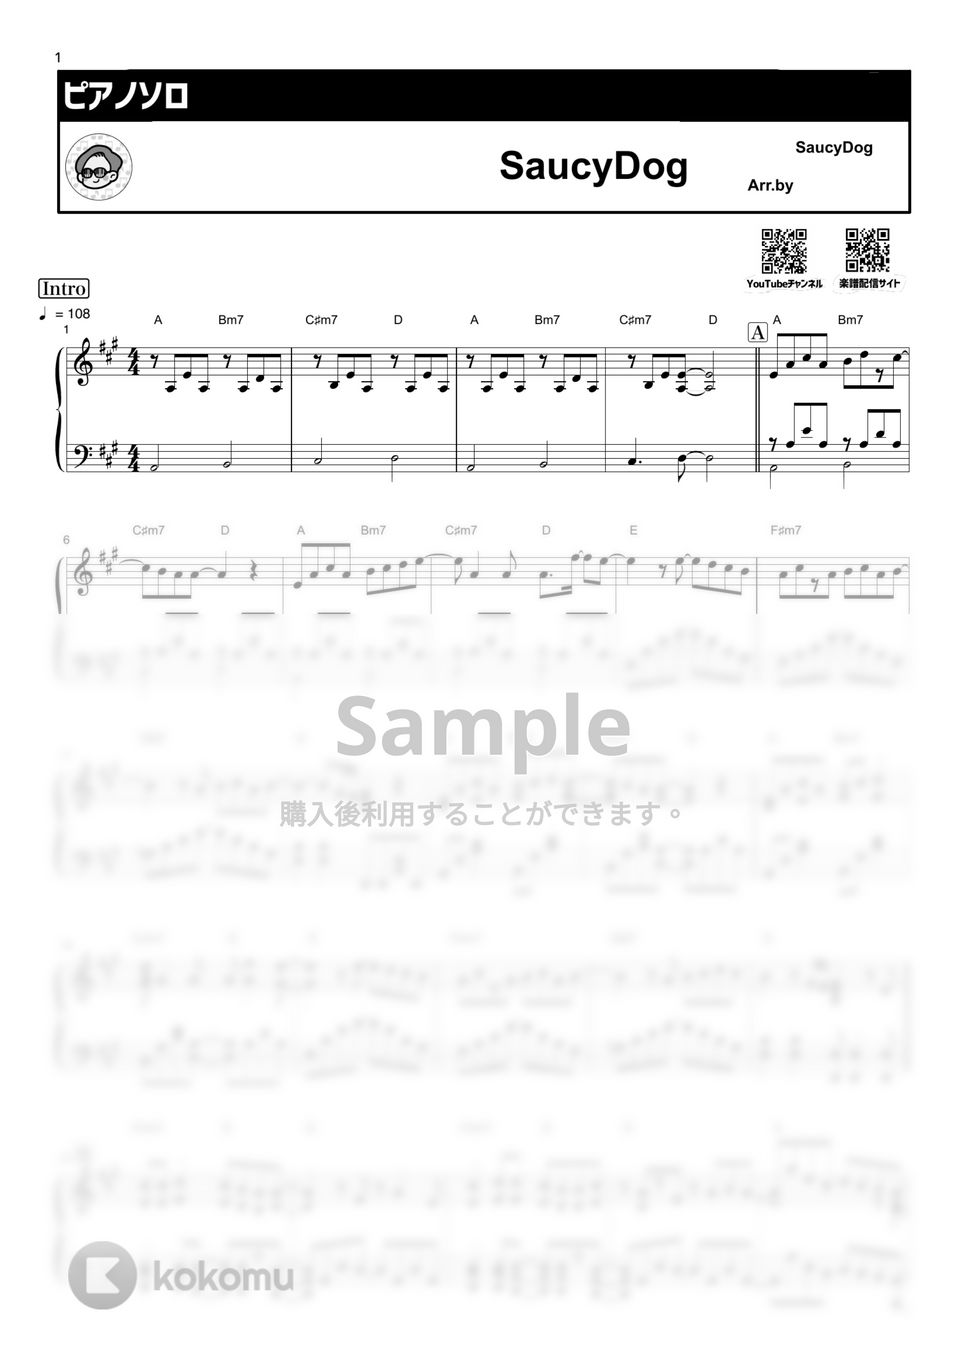 Saucy Dog - シンデレラボーイ by シータピアノ